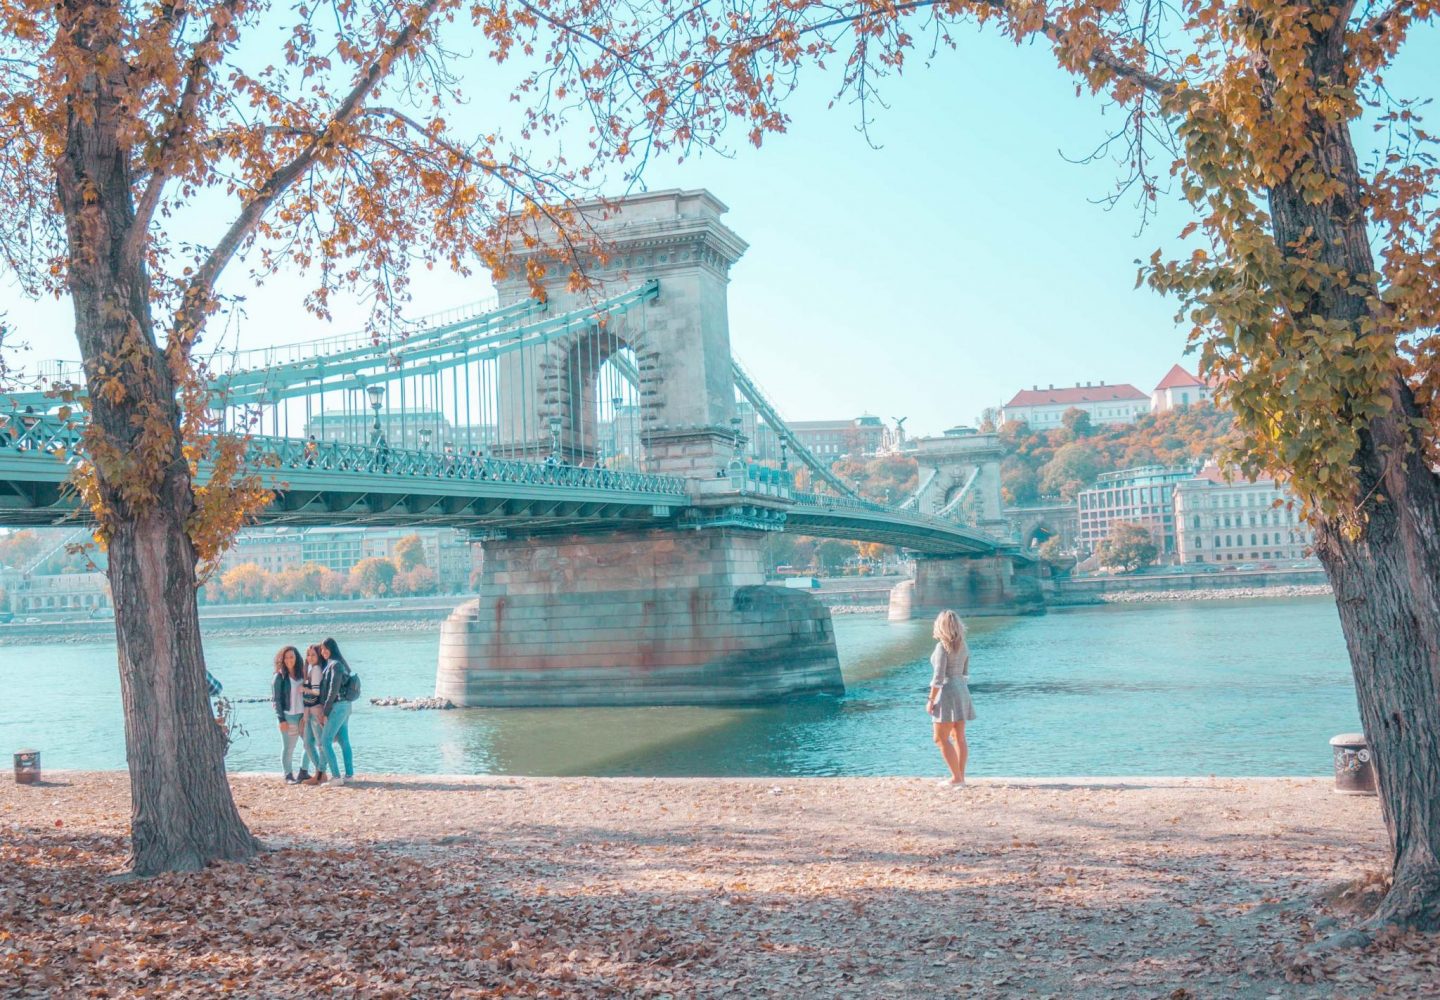 5 days in Budapest - Chain Bridge